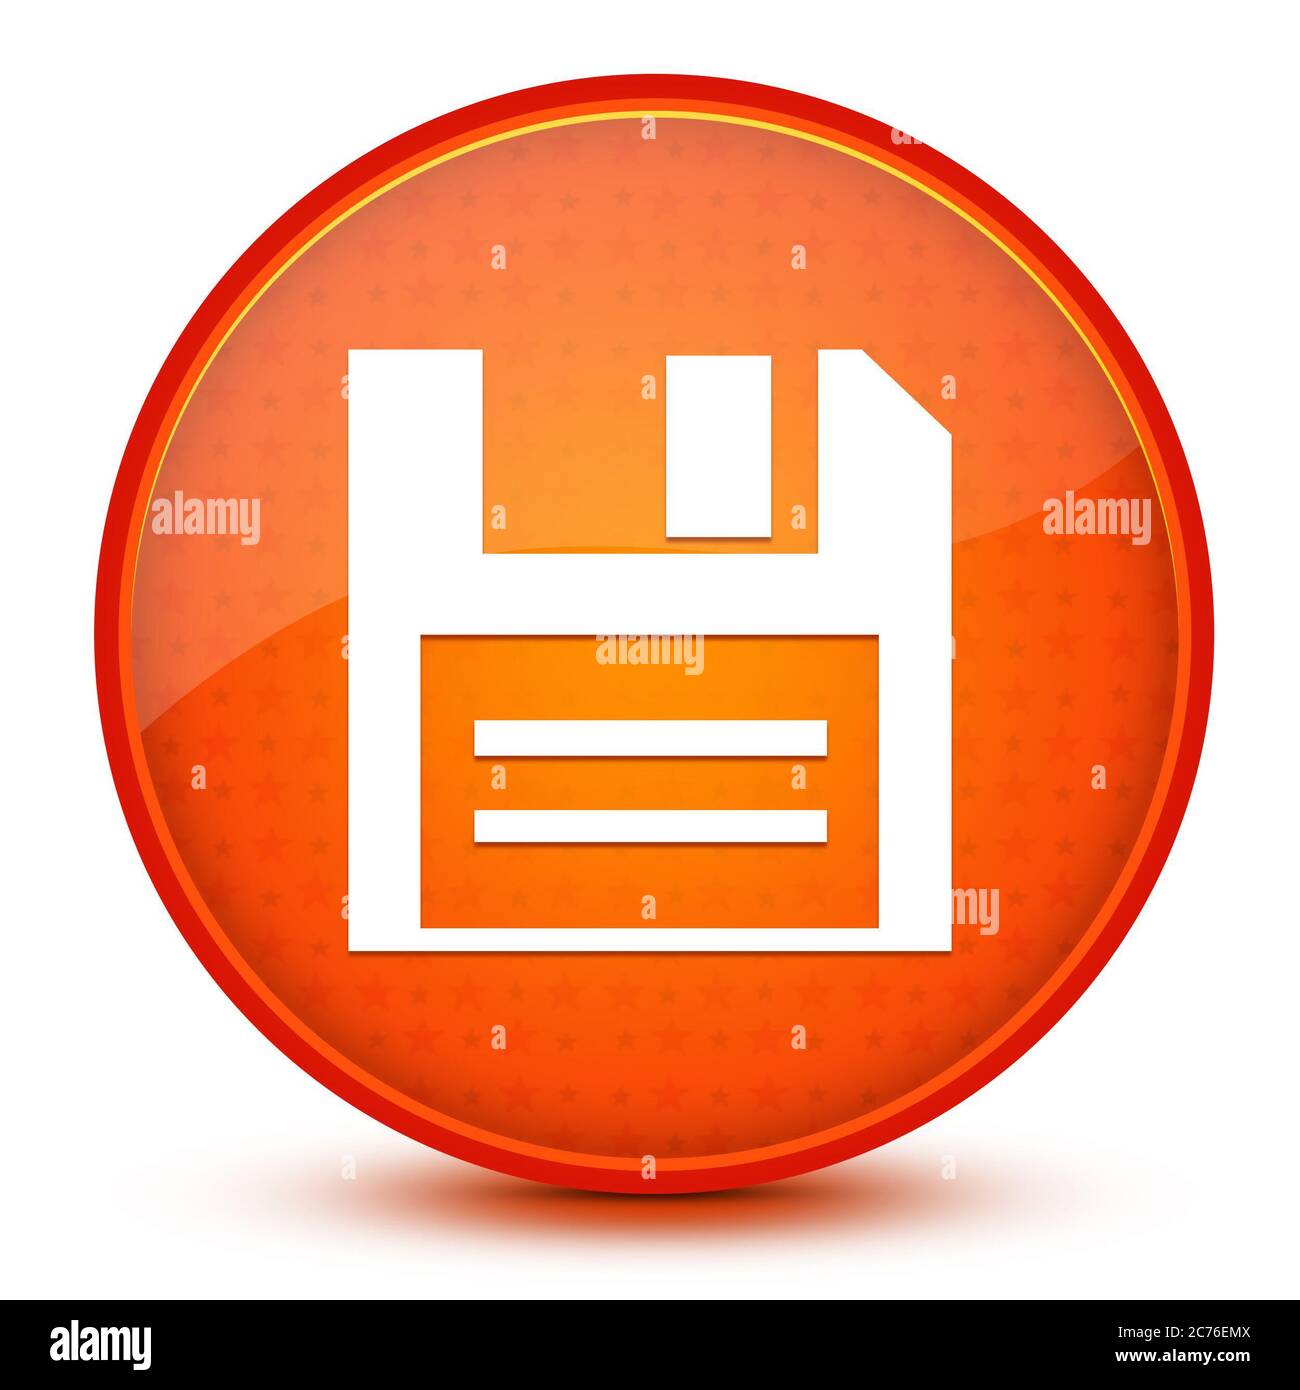 Icona del disco isolata su una stella lucida con pulsante rotondo arancione illustrazione astratta Foto Stock